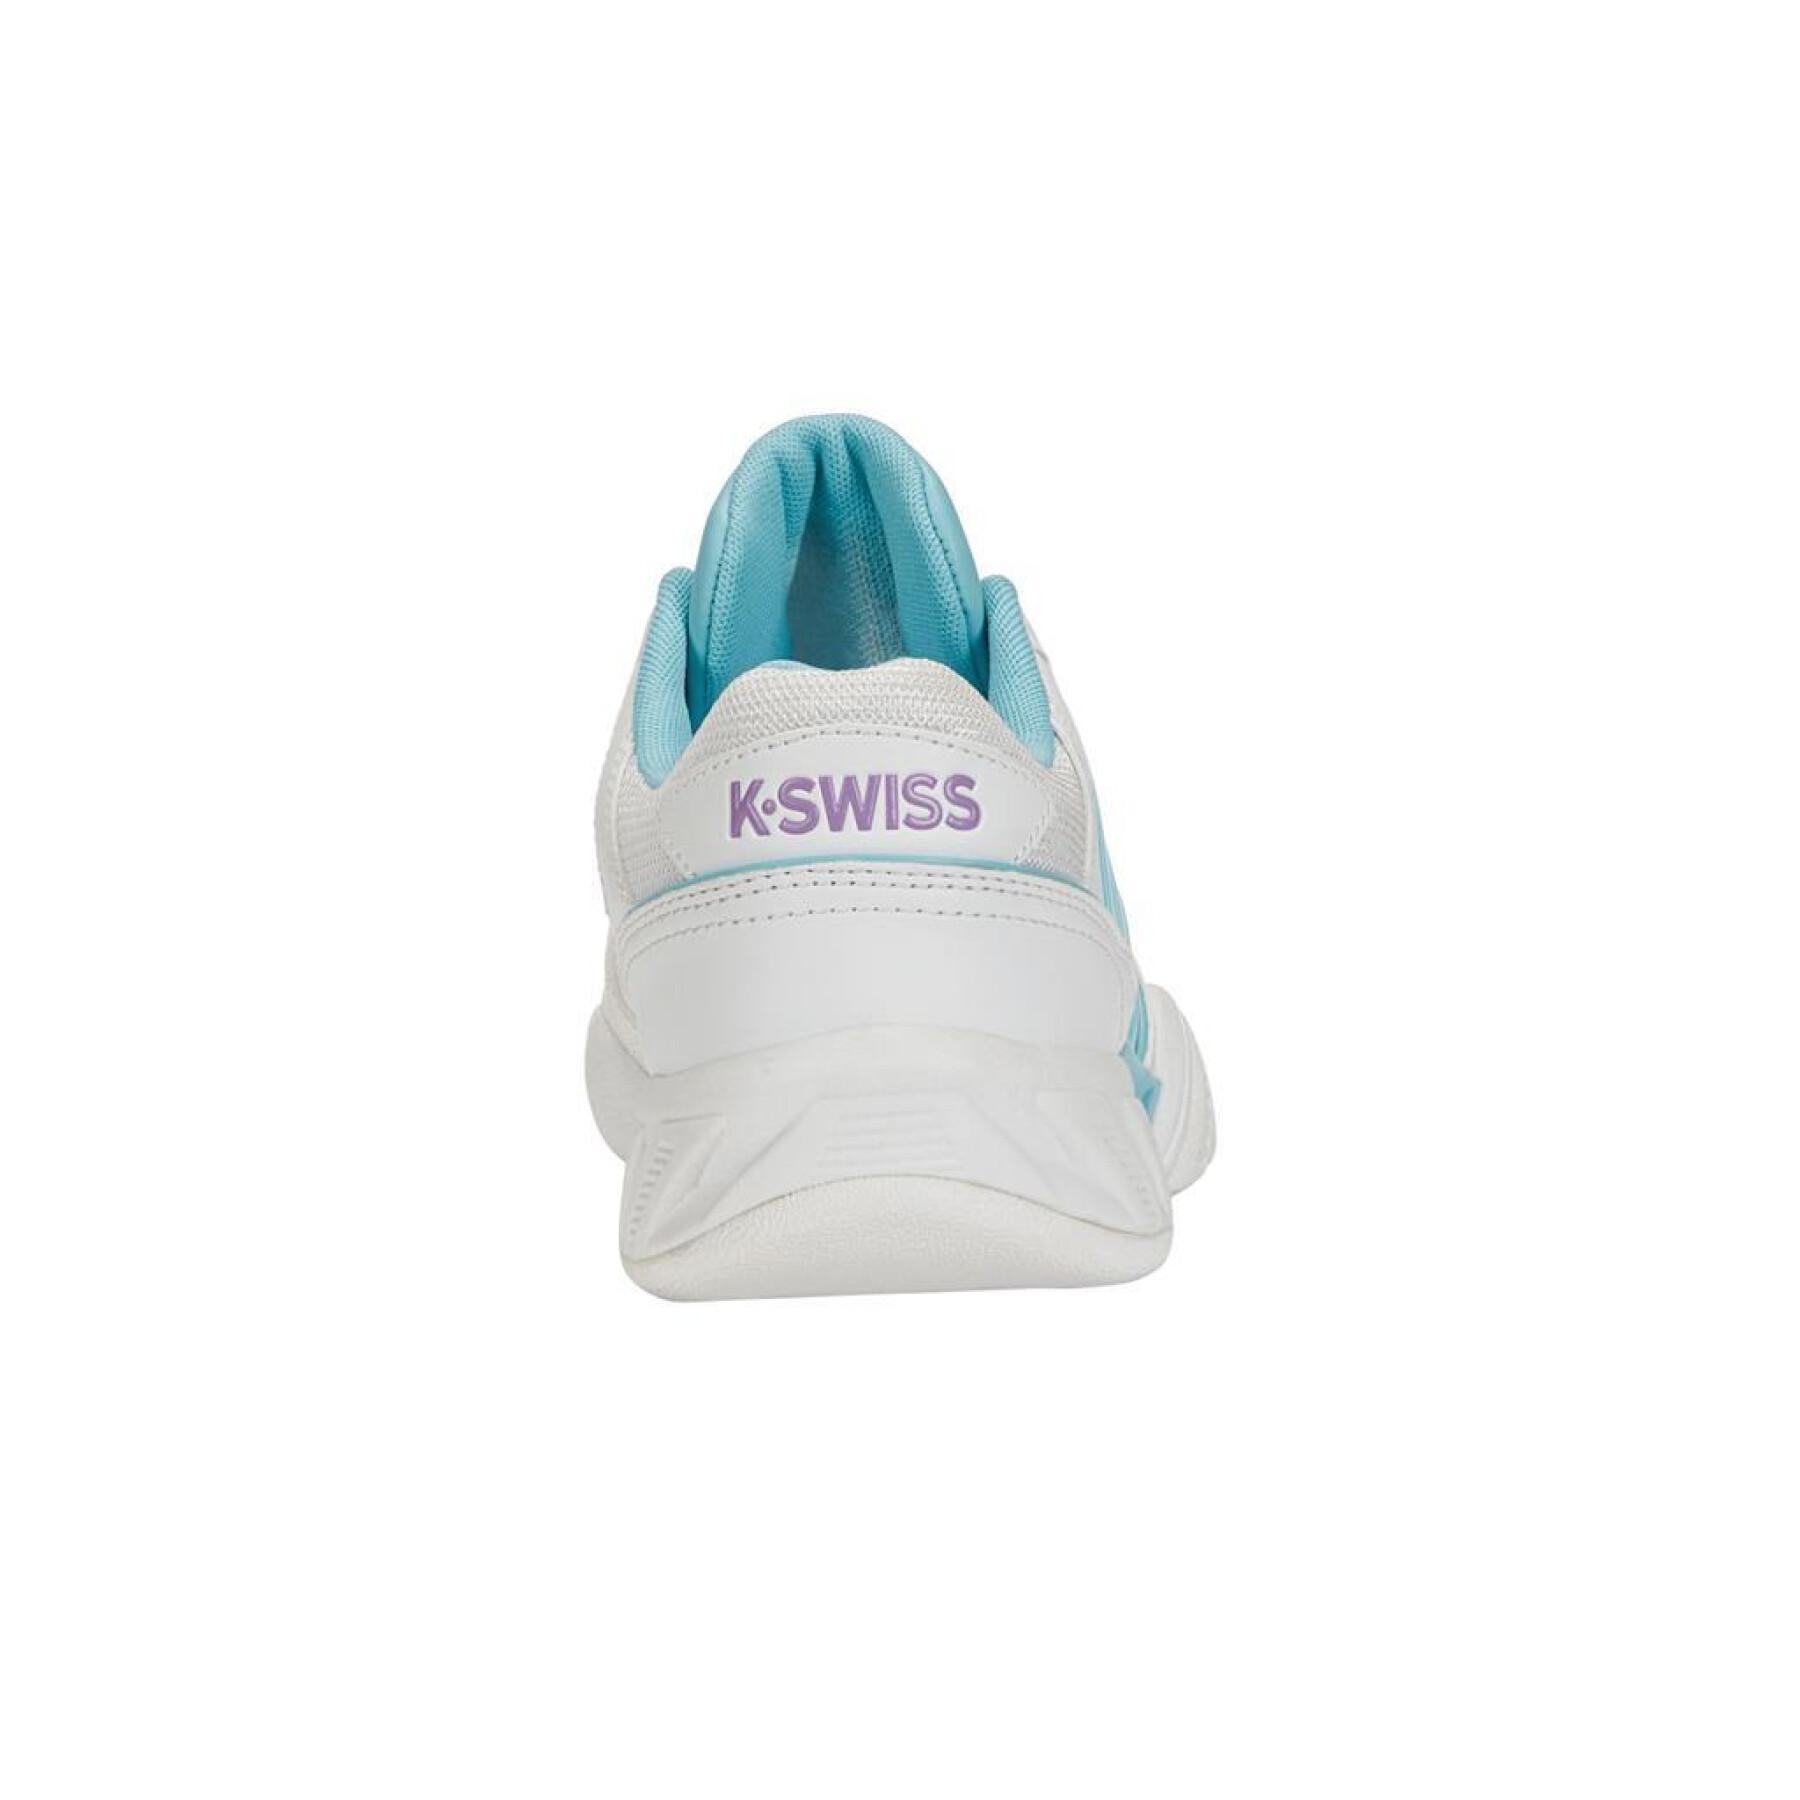 Chaussures de tennis femme K-Swiss Bigshot Light 4 Carpet